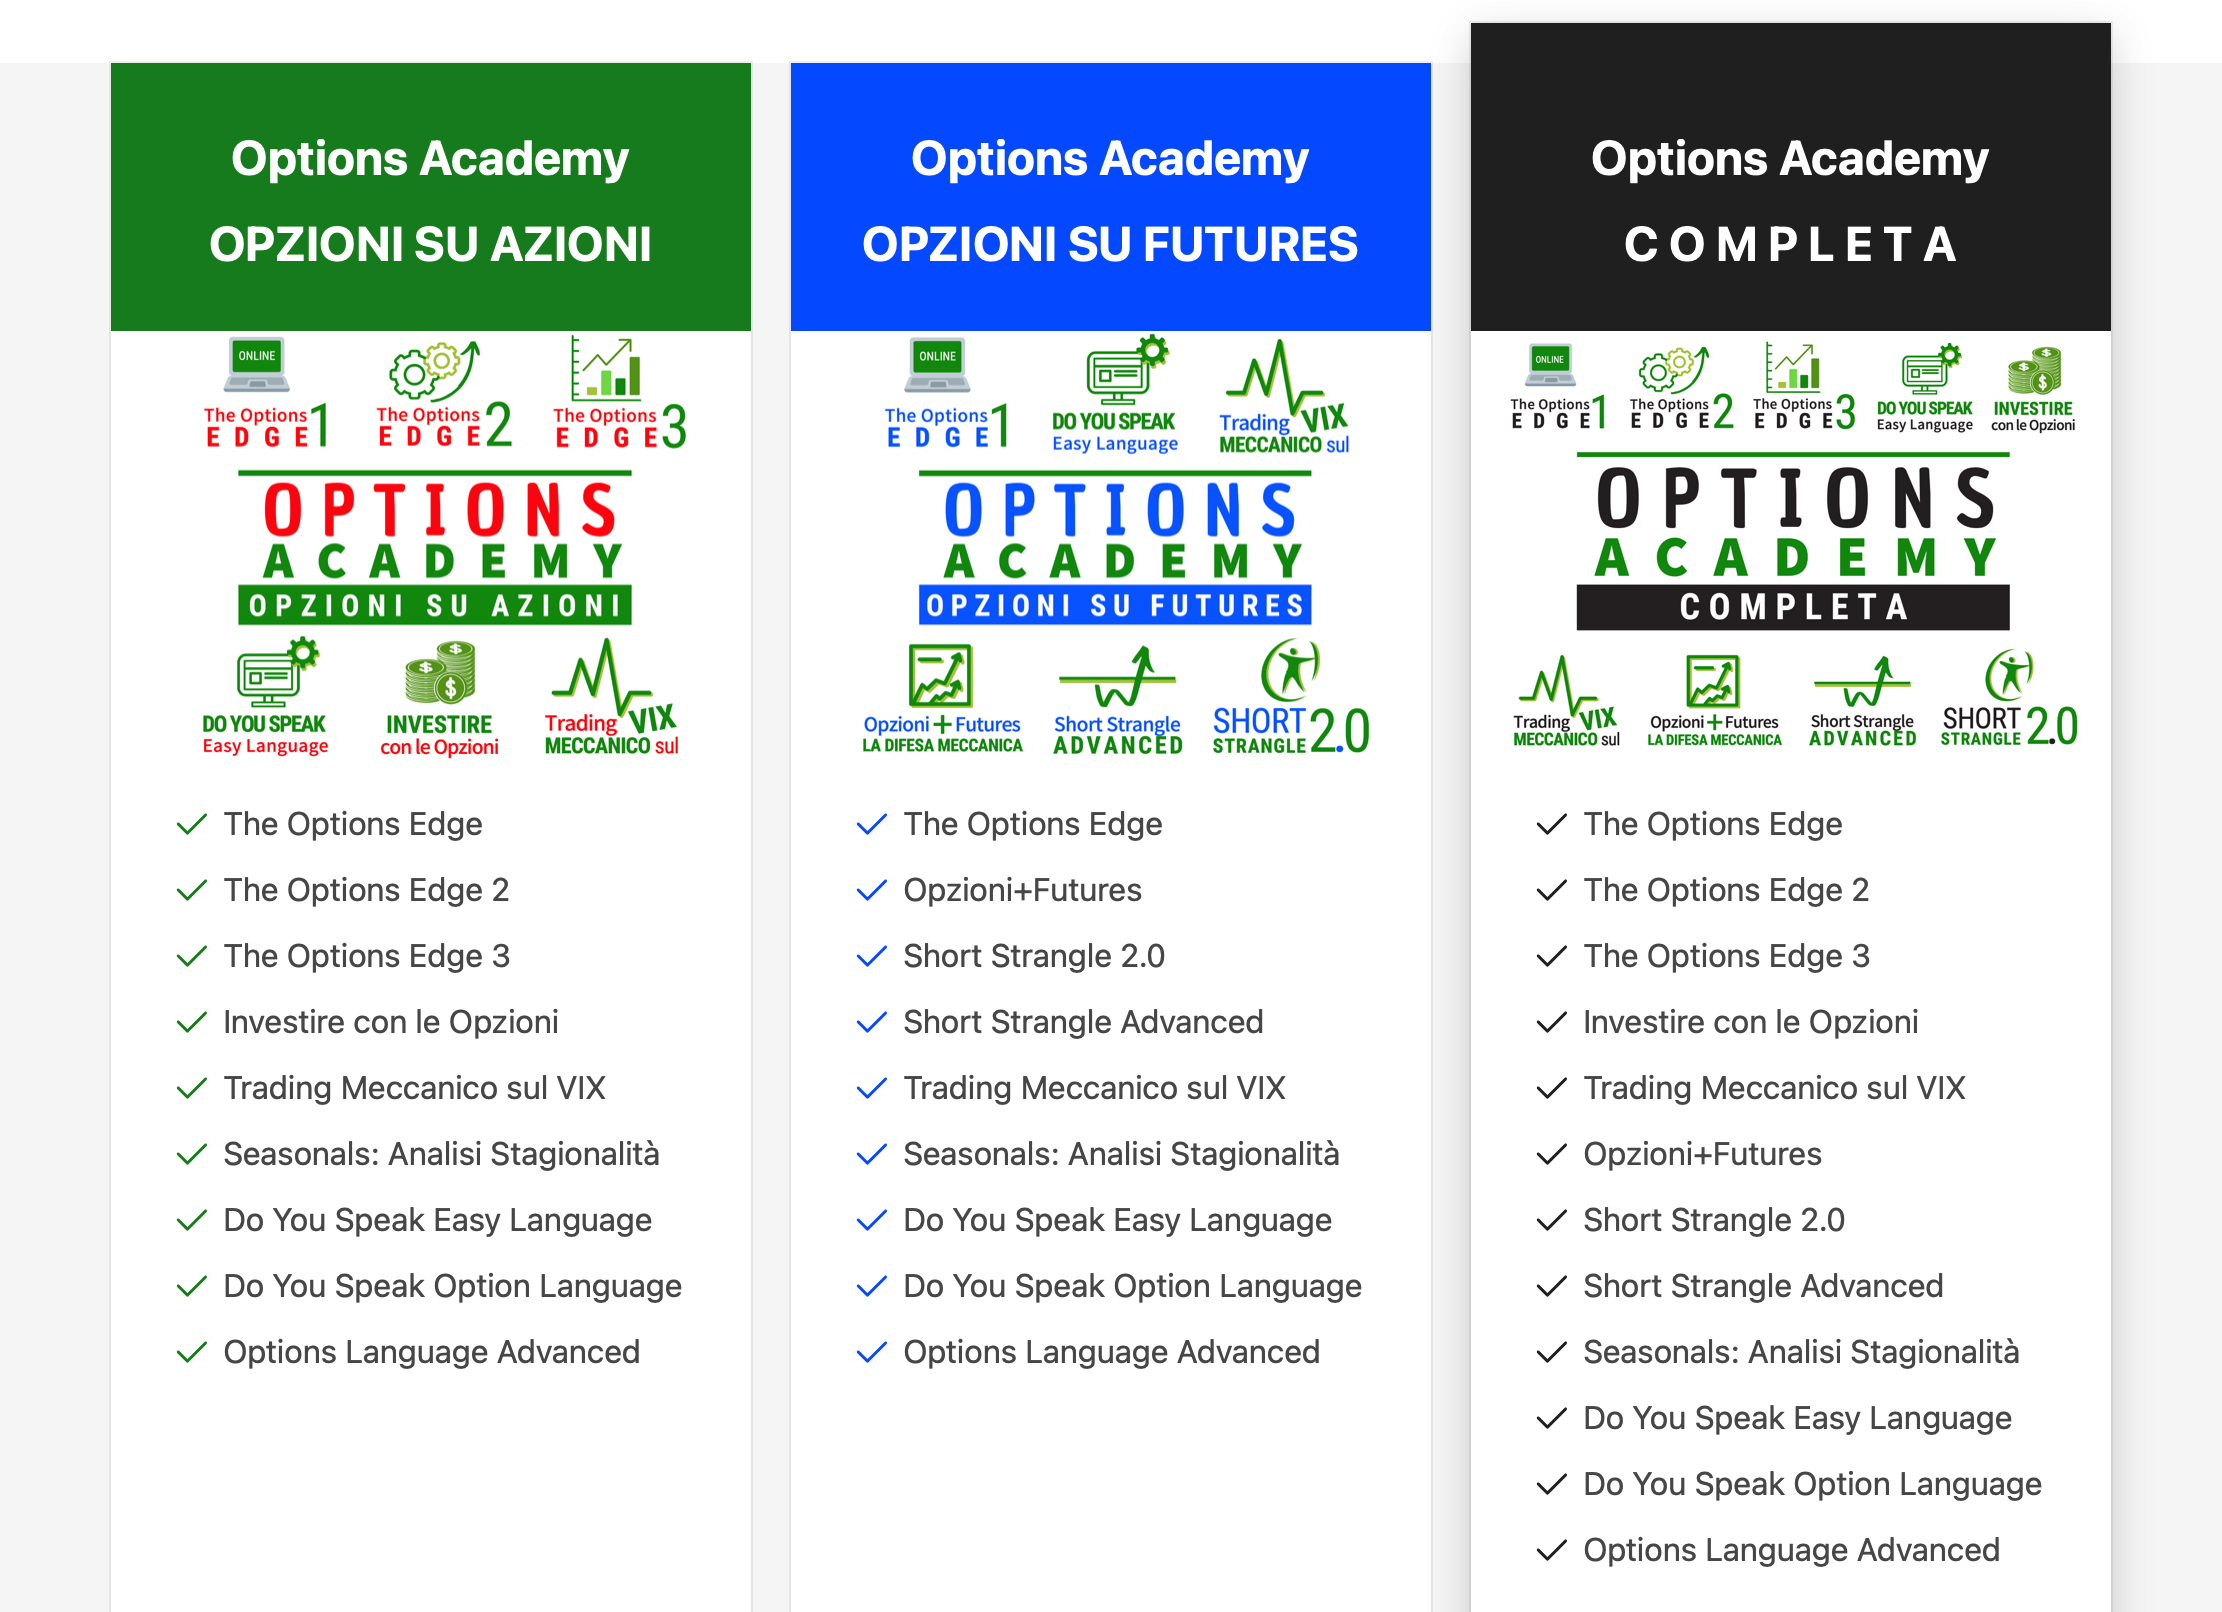 options academy di qtlab 